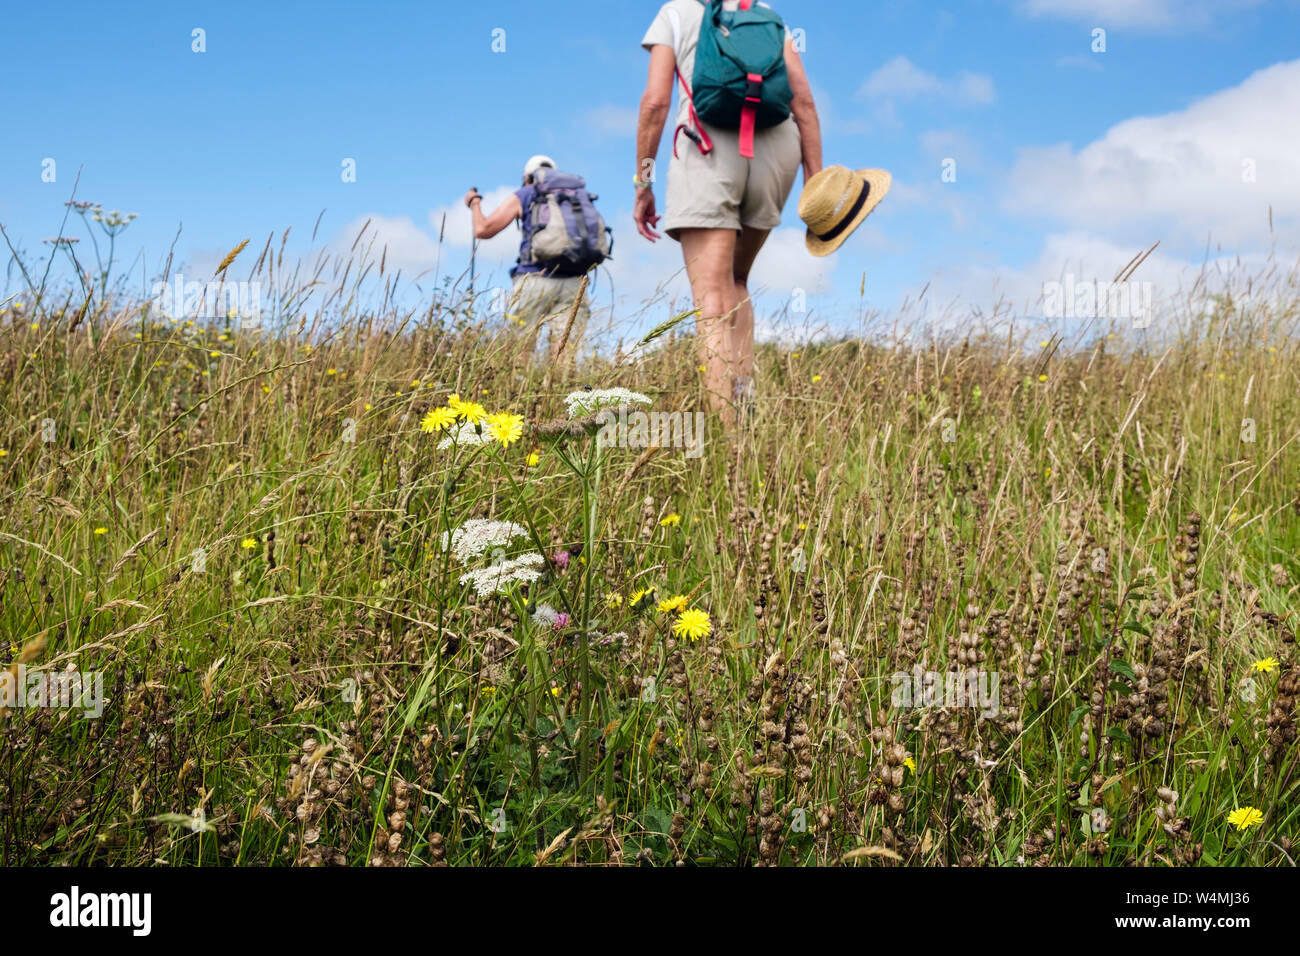 Les randonneurs randonnée sur un pays à travers un champ de hay meadow Hochet jaune et de fleurs sauvages en été. Benllech Isle of Anglesey Pays de Galles Royaume-uni Grande-Bretagne Banque D'Images